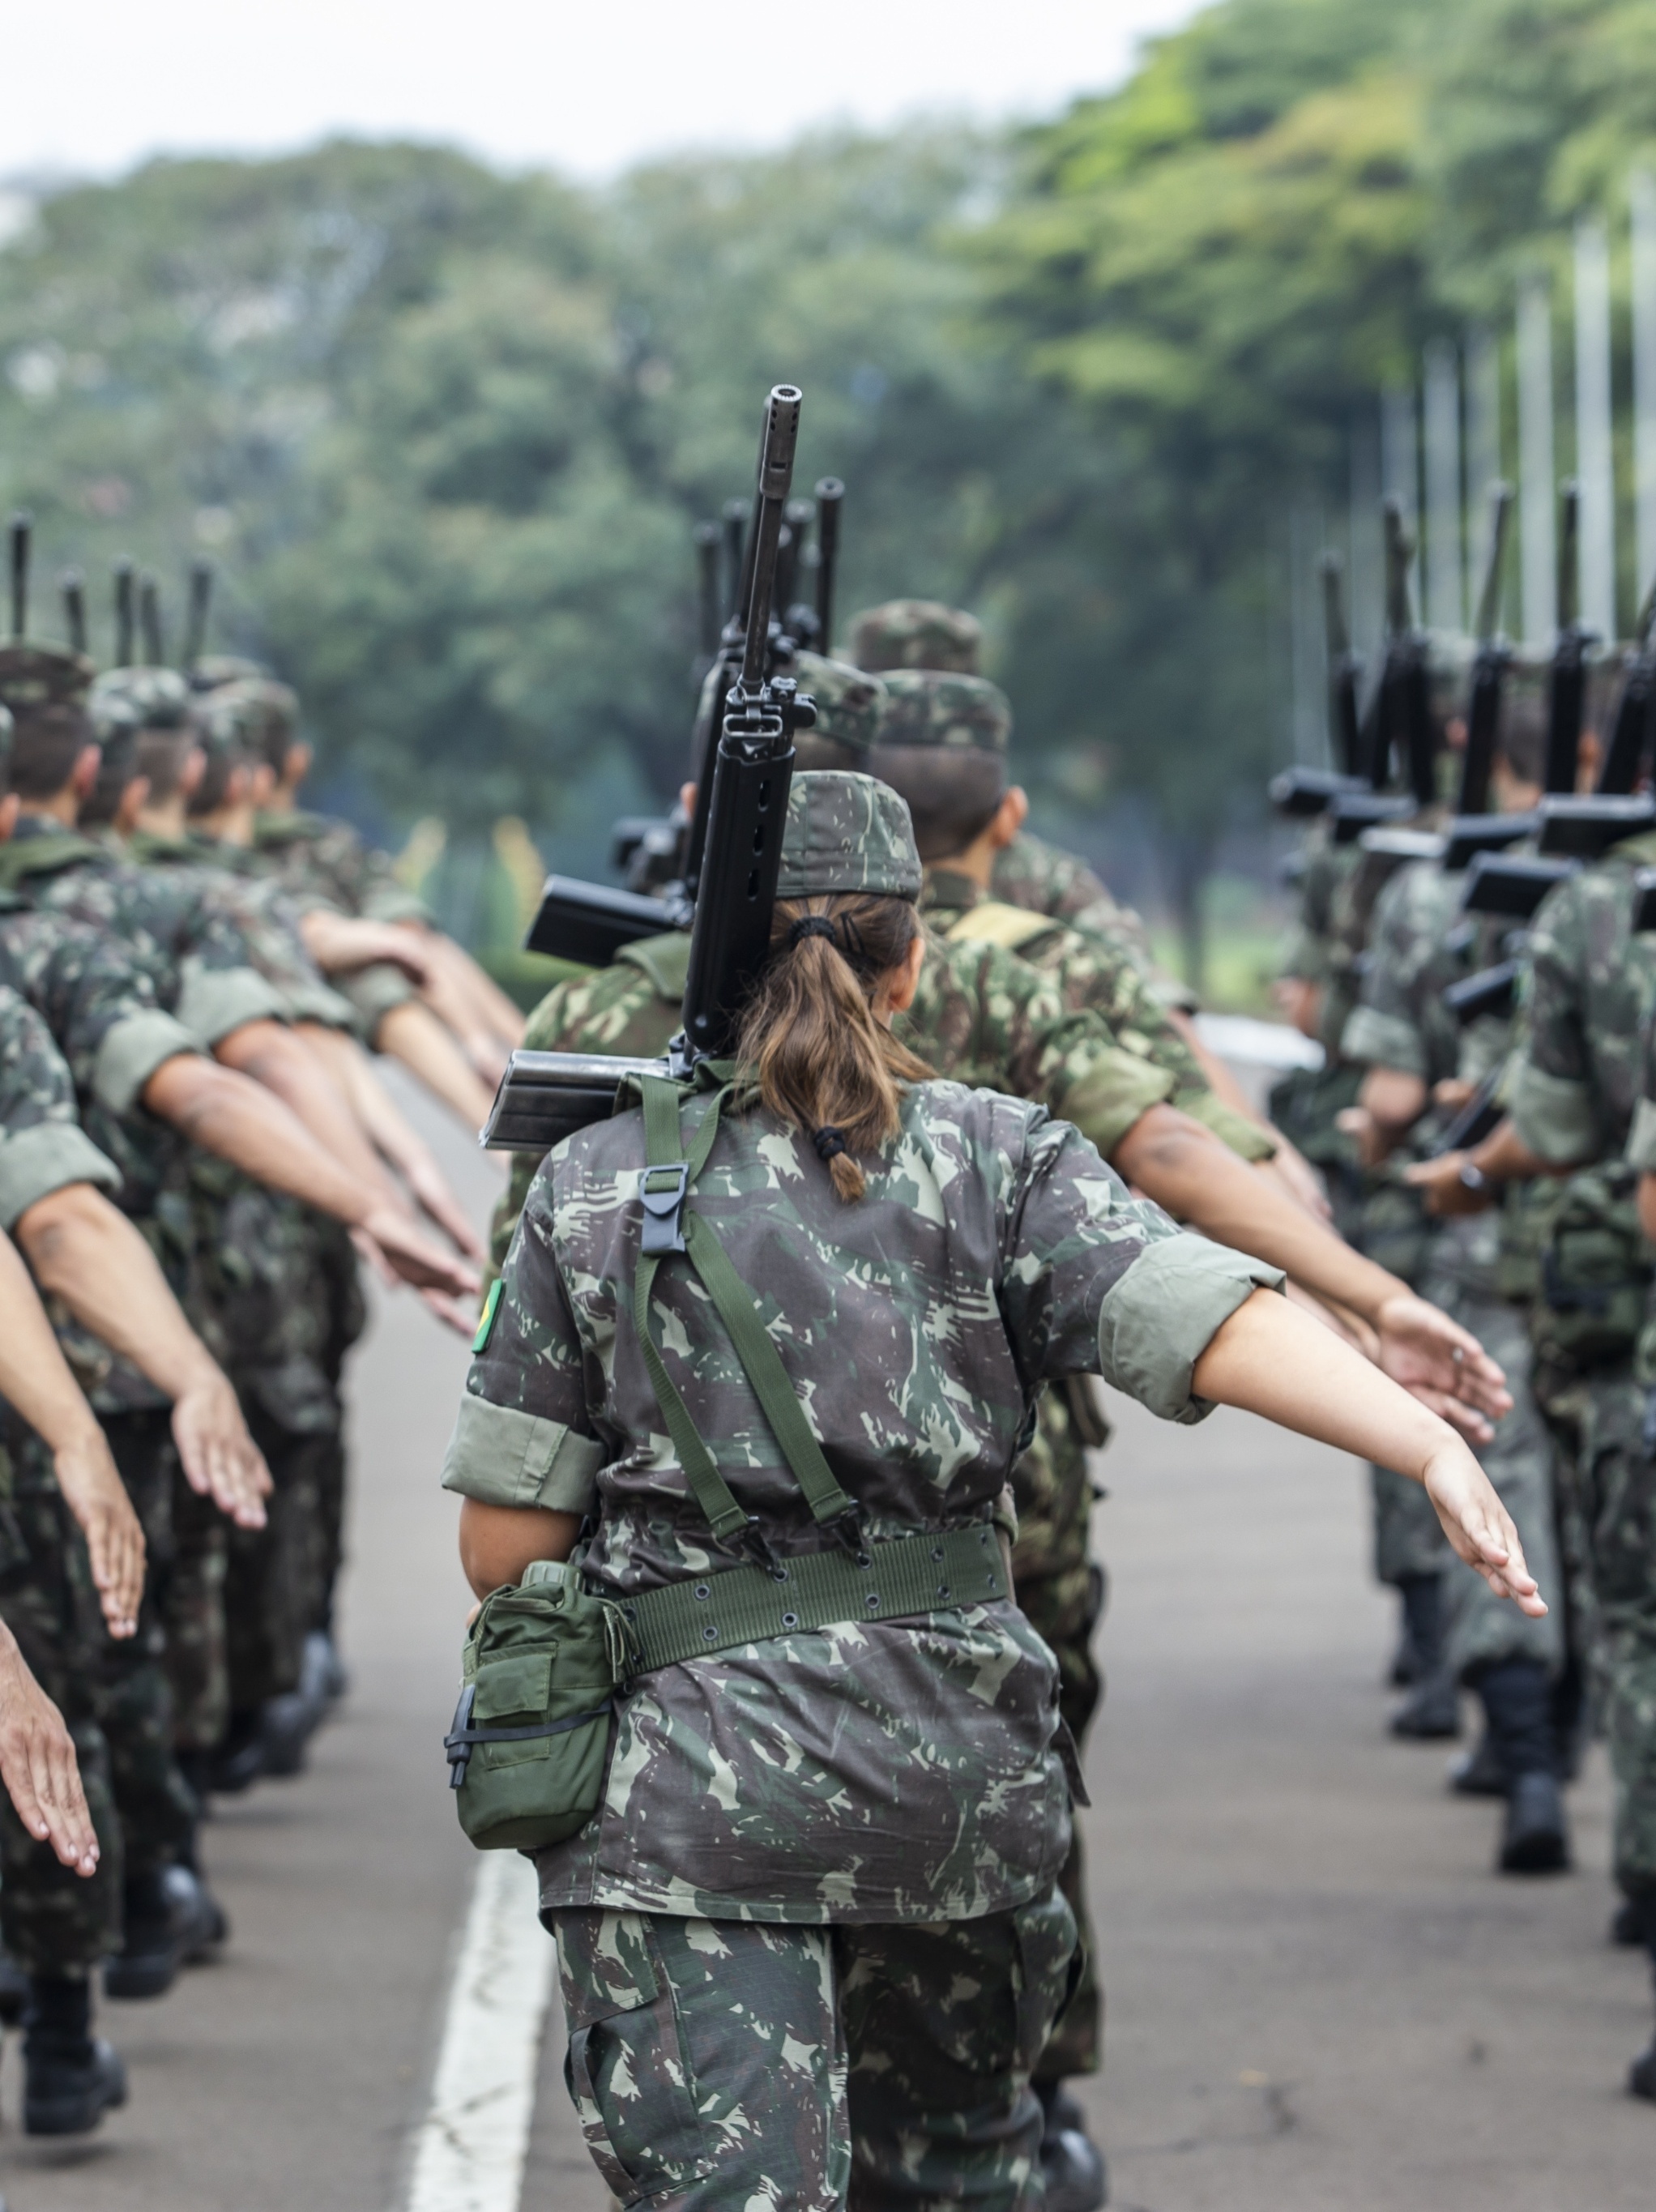 Exército Brasileiro 🇧🇷 on X: Se você é do sexo masculino e completa 18  anos em 2022, você deve se alistar para o serviço militar até 30 de junho.  ATENÇÃO: não é